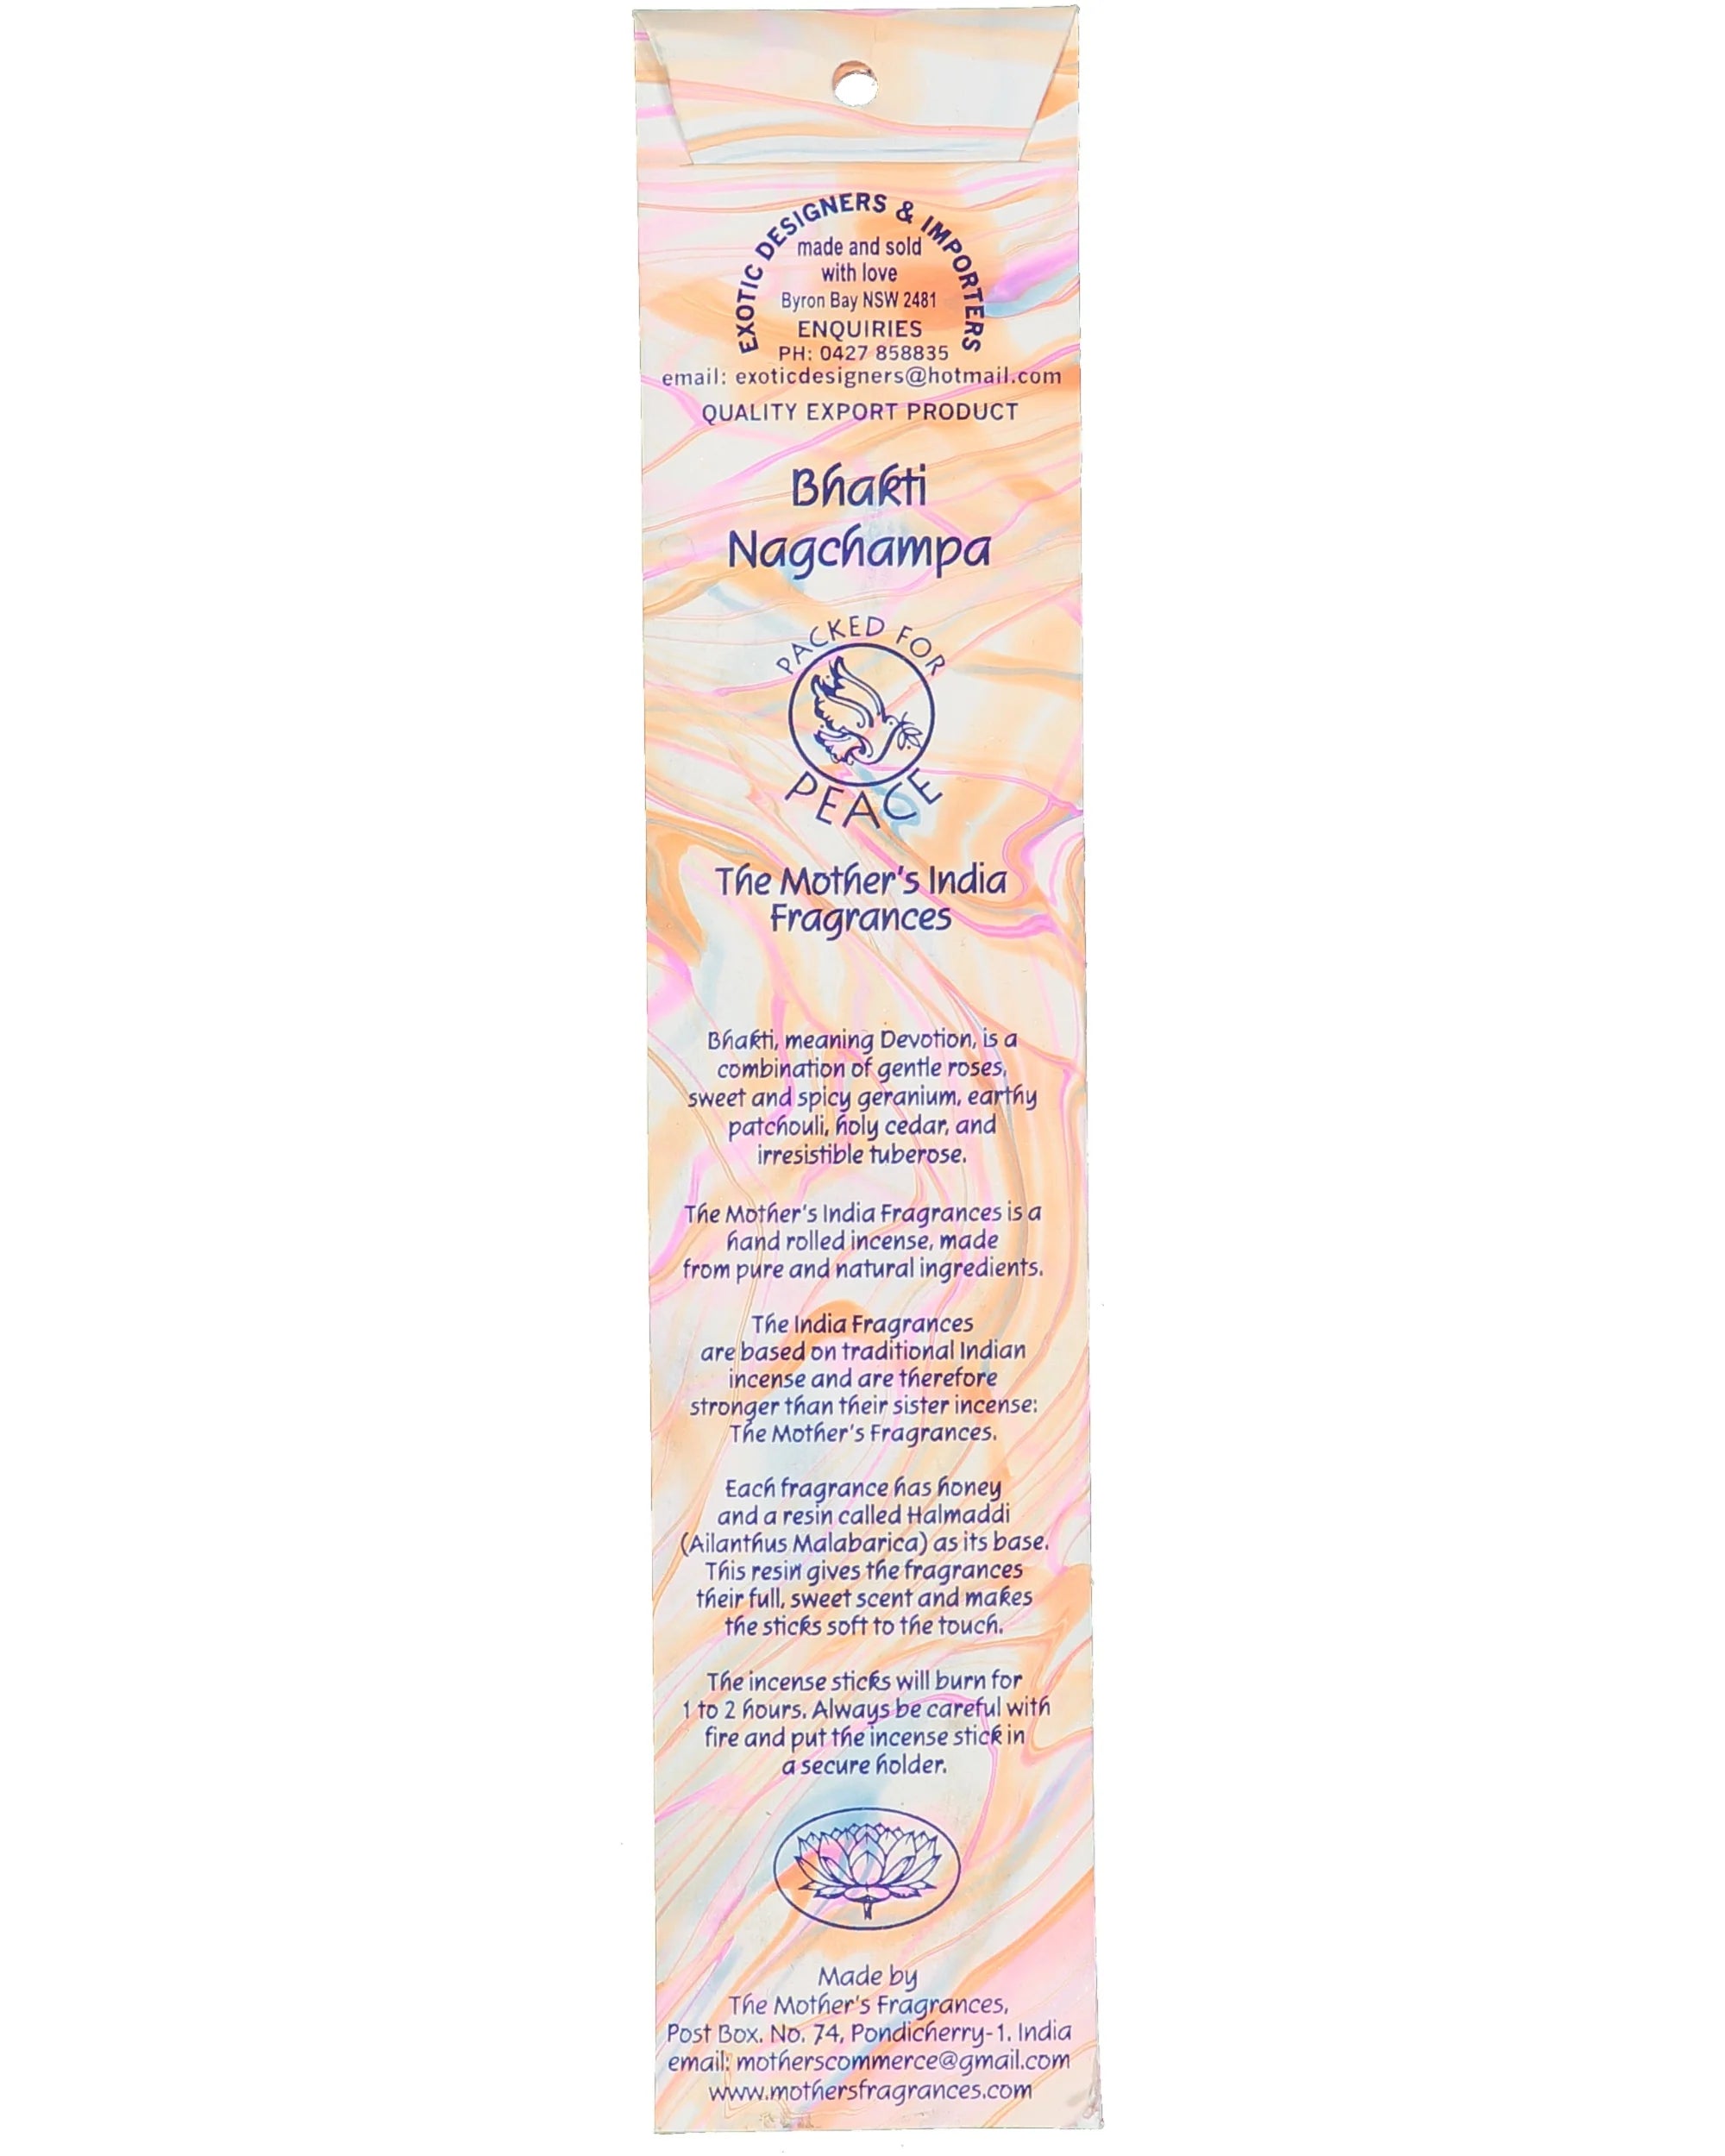 Bhakti Nagchampa Real Incense by The Mother's India Fragrances Tantrika Australia